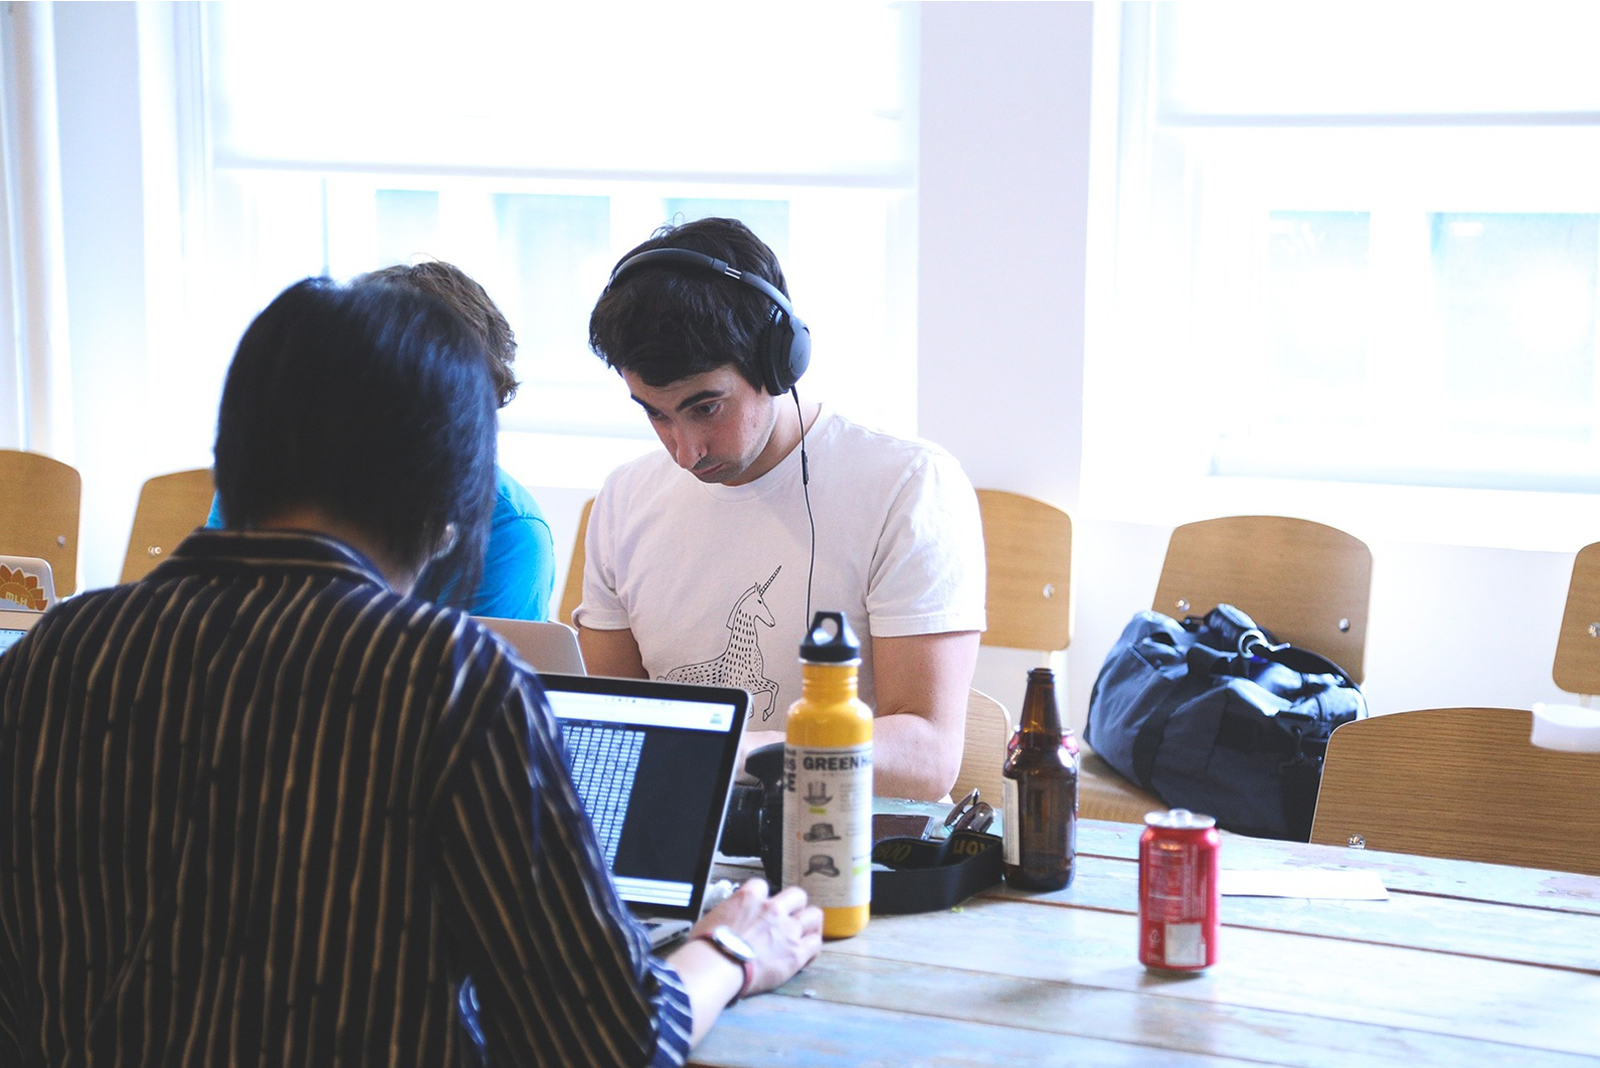 Das Bild zeigt drei Menschen, die gemeinsam an einem Tisch sitzen und auf ihre Laptops schauen. © Servicestelle Jugendbeteiligung e. V., 2021